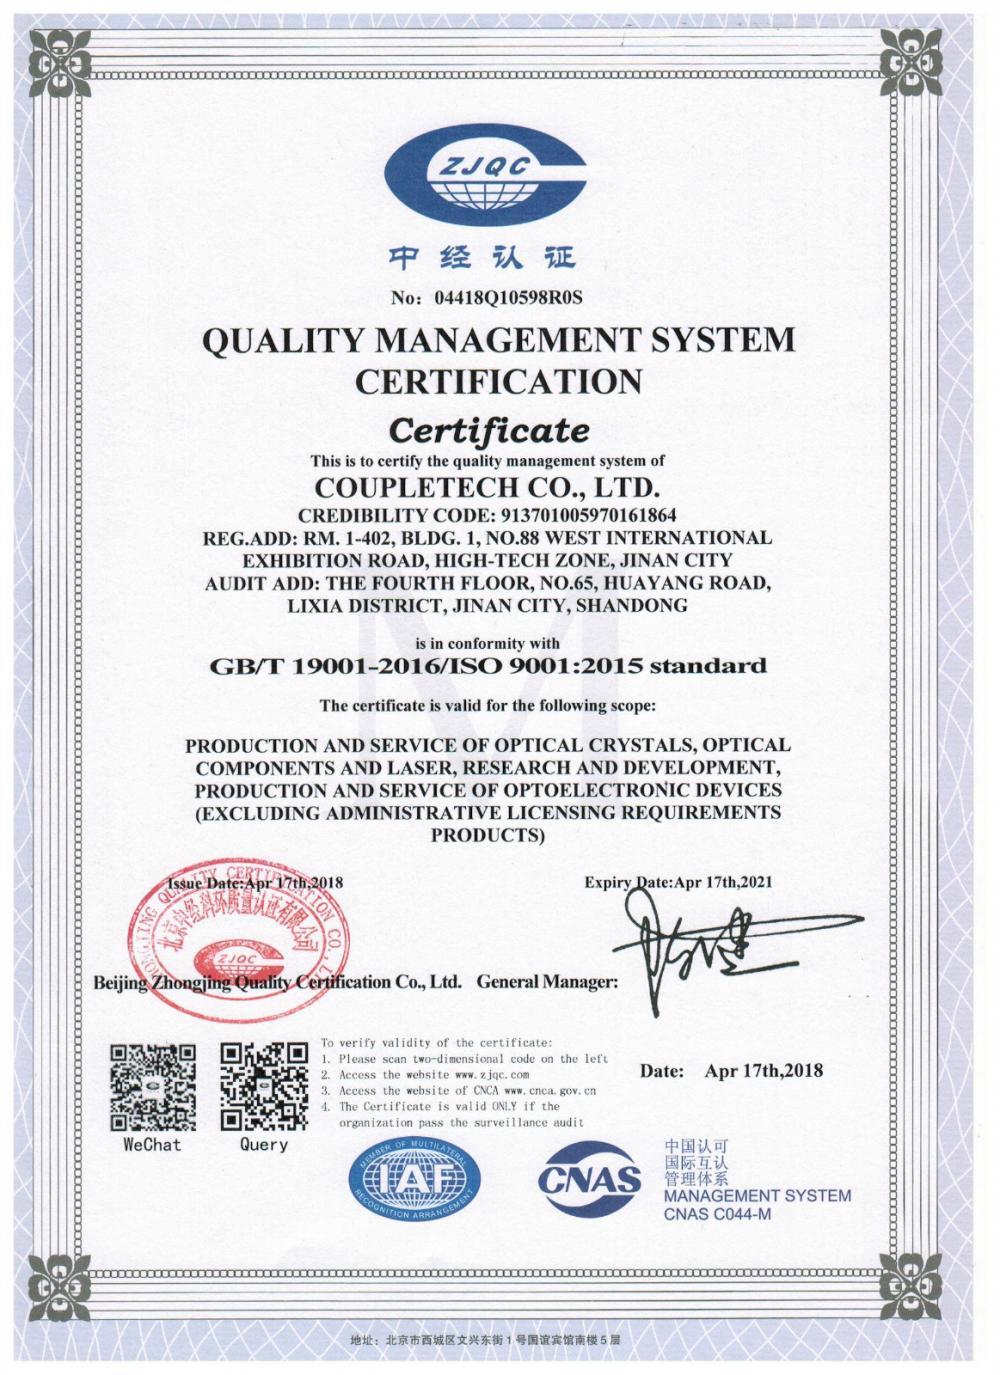 Coupletech Co., Ltd. on läbinud sertifikaadi: moodulklamber aktiivsete temperatuurikontrolli kristallide jaoks.